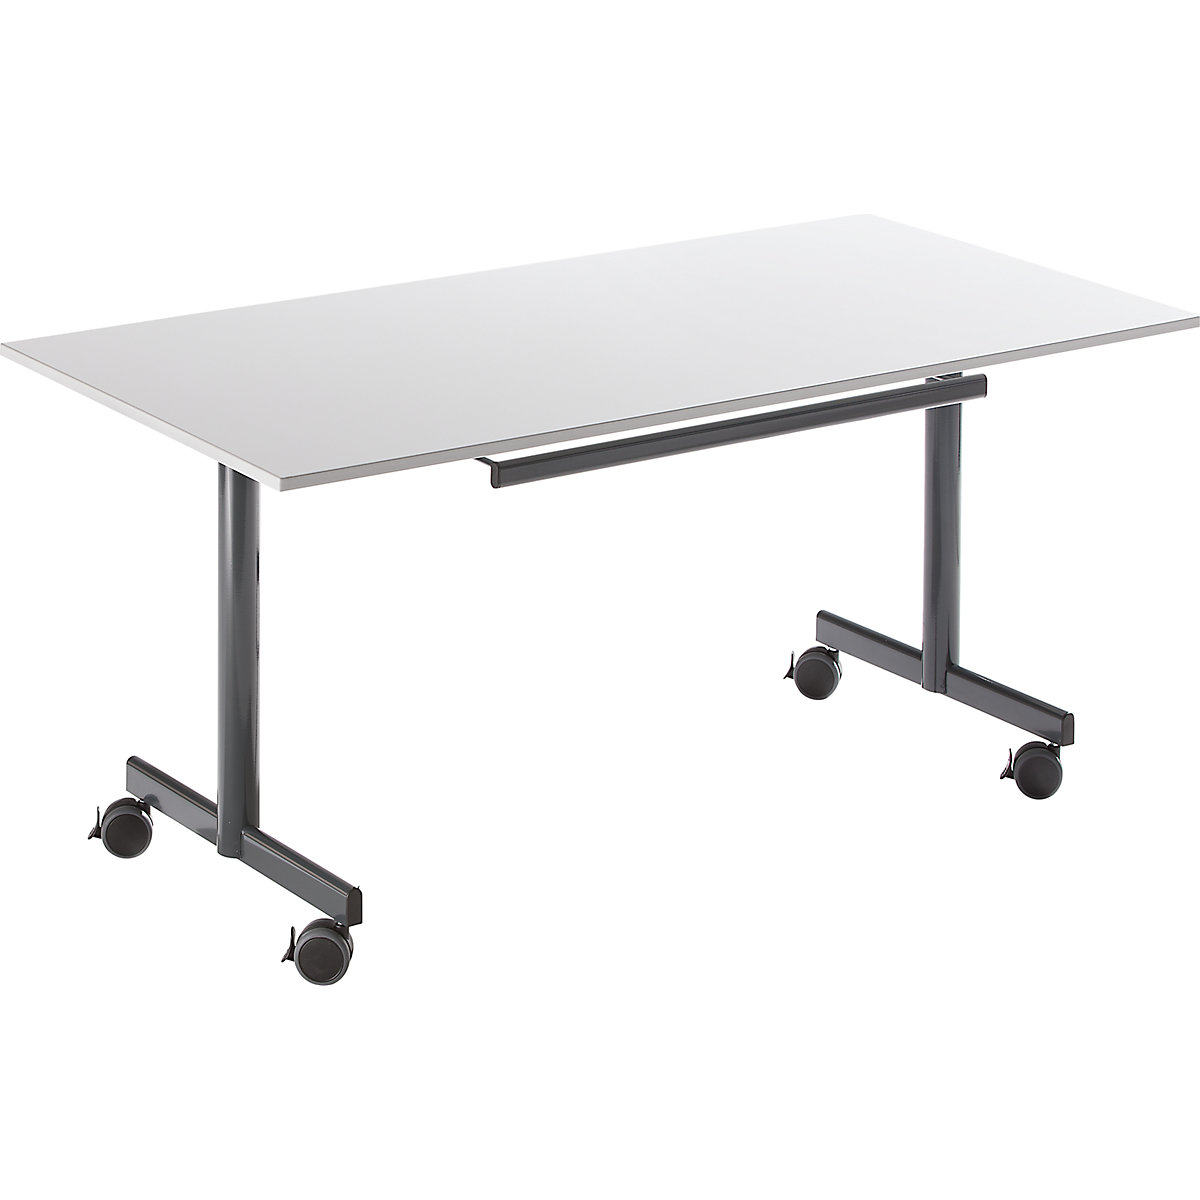 Stůl s odklopnou deskou, mobilní, v x š x h 720 x 1600 x 800 mm, šedá-3